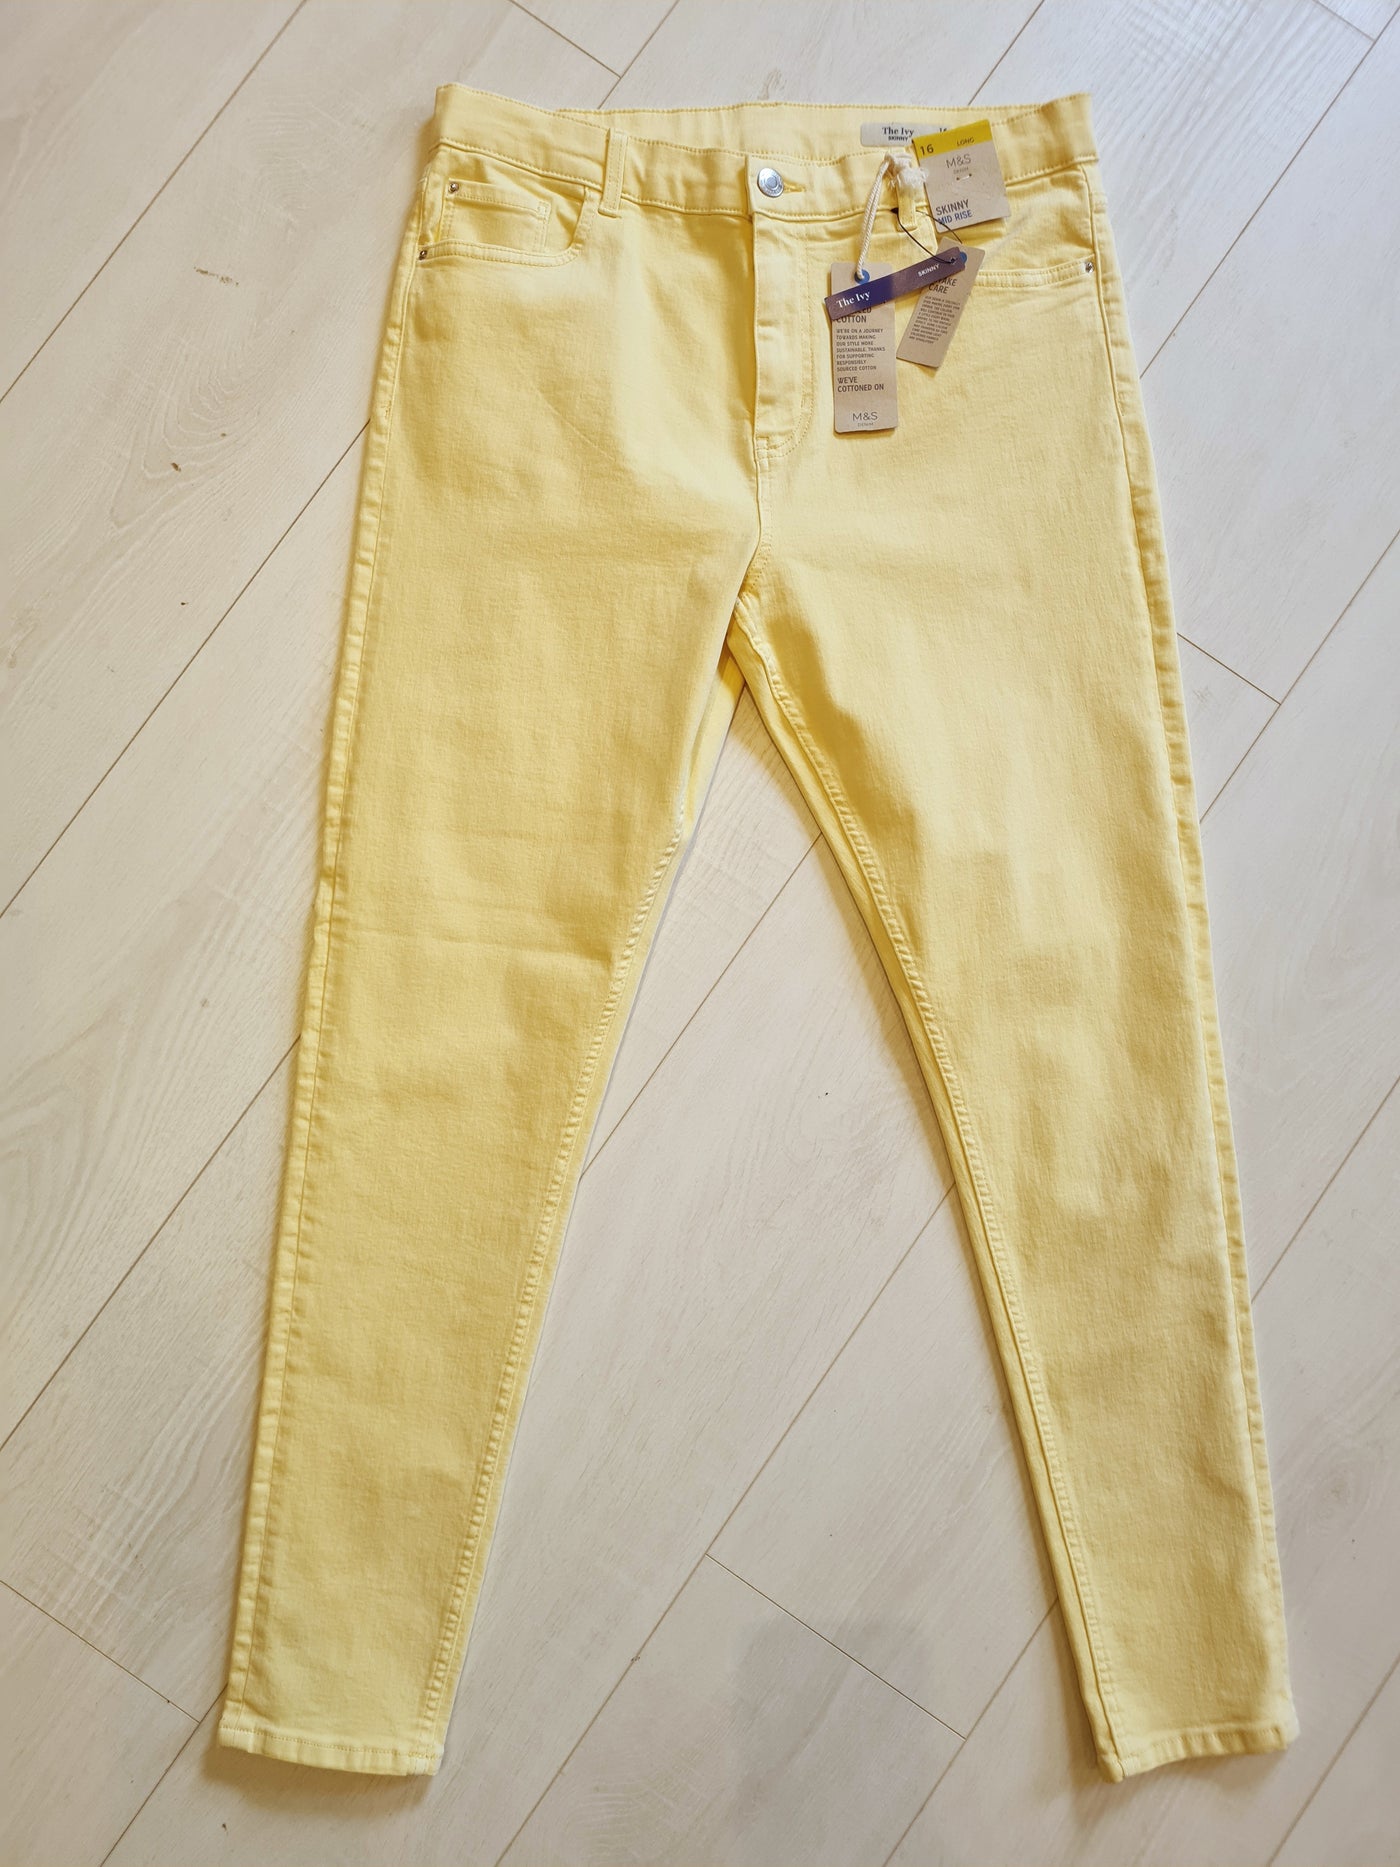 M&S Lemon Stretch Canvas Jeans Size 16L (New)